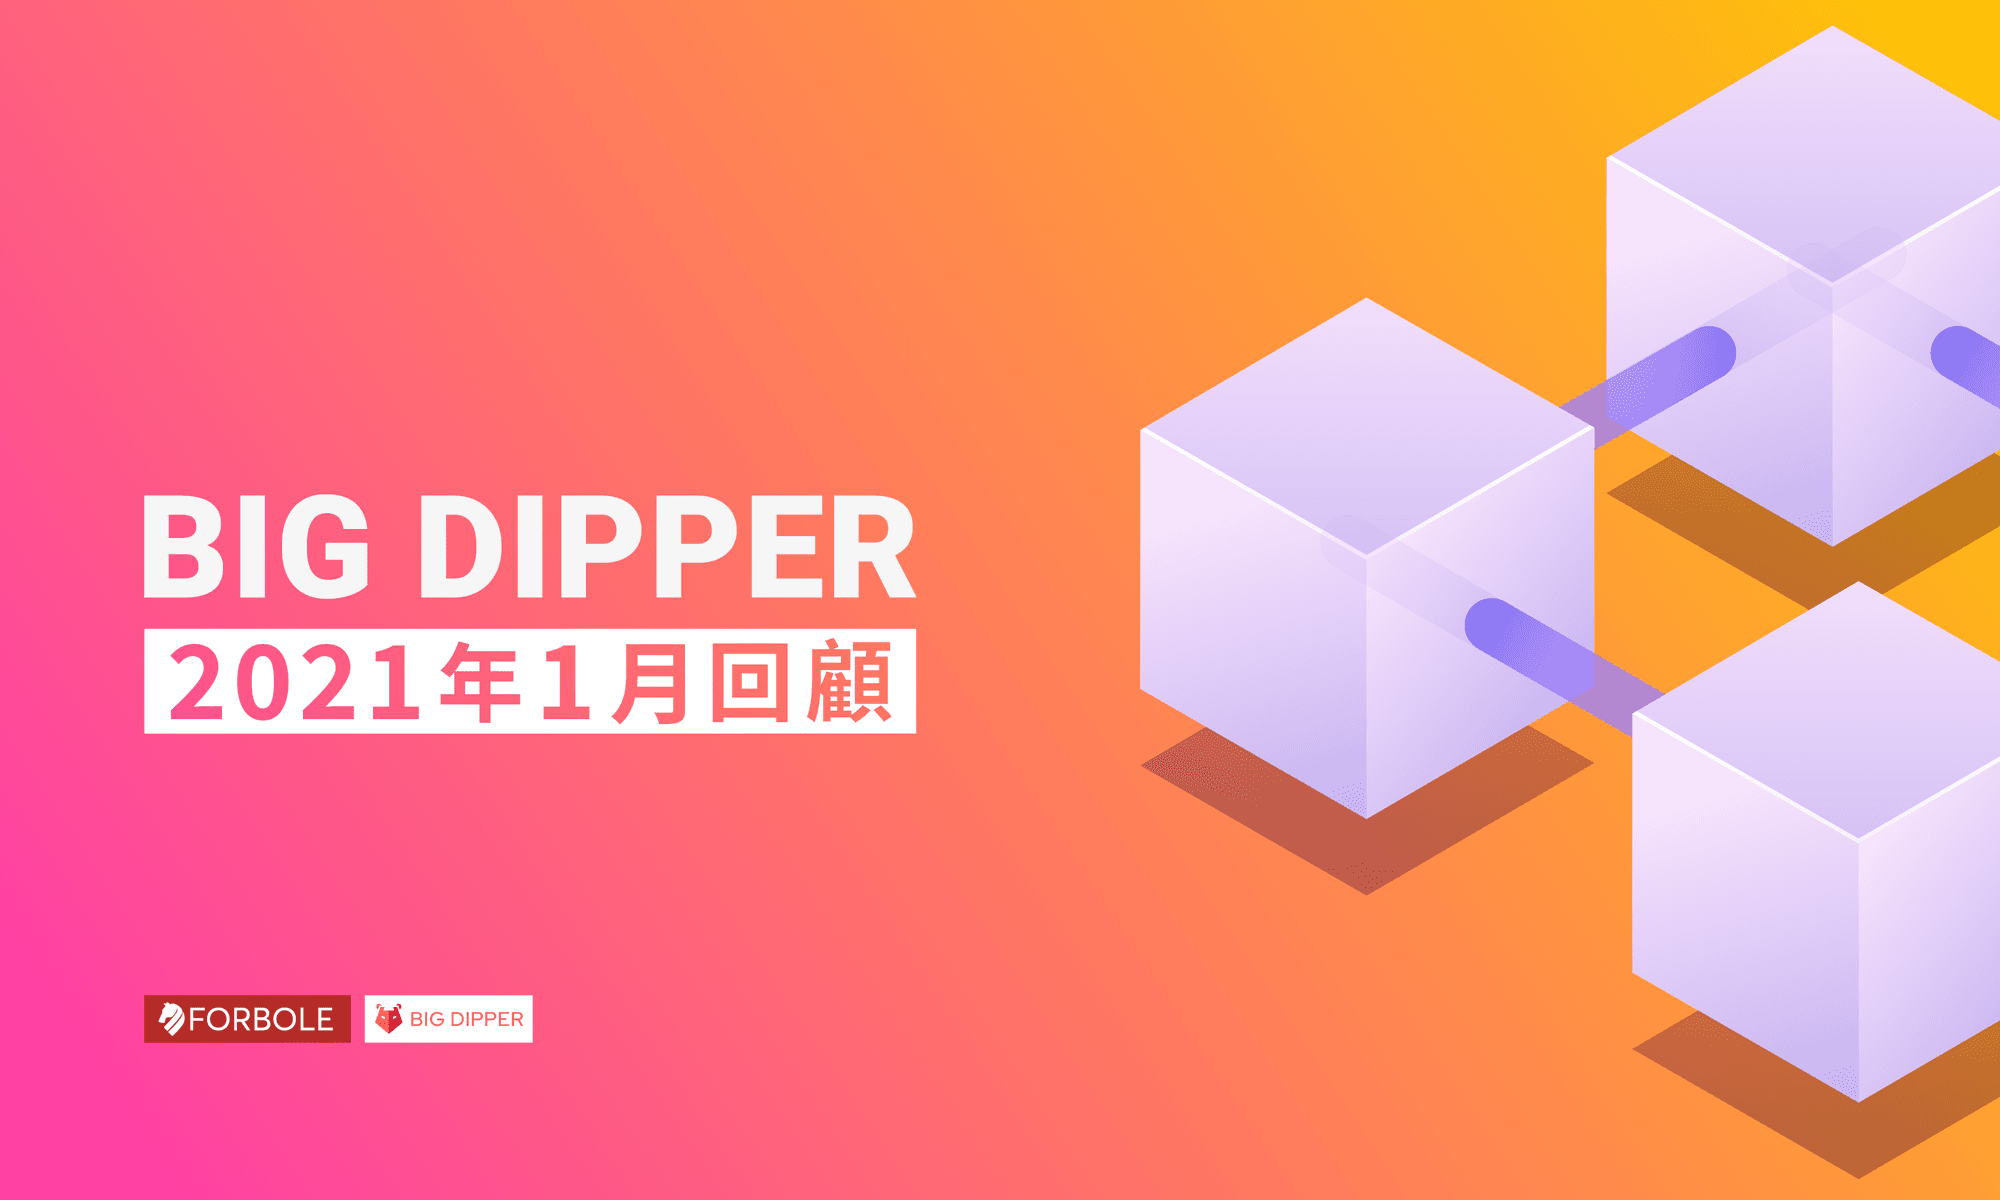 Big Dipper 每月回顧 - 2021 年 1 月